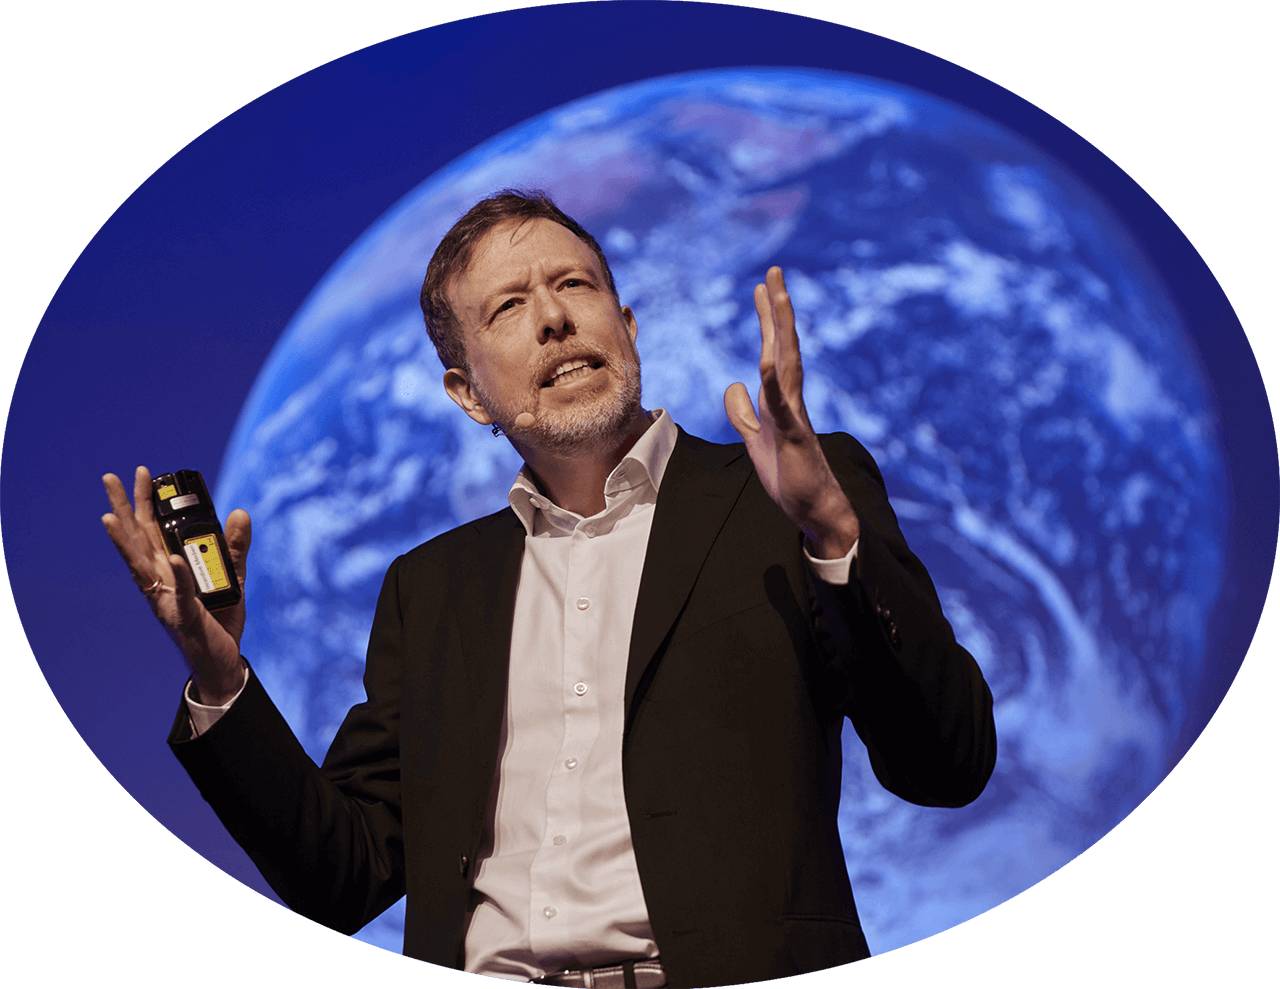 Porträt von Dr. Nicolas Dierks beim Keynote-Vortrag, mit weiter Geste erklärend. Im Hintergrund ist ein Bild des Planeten Erde zu sehen.